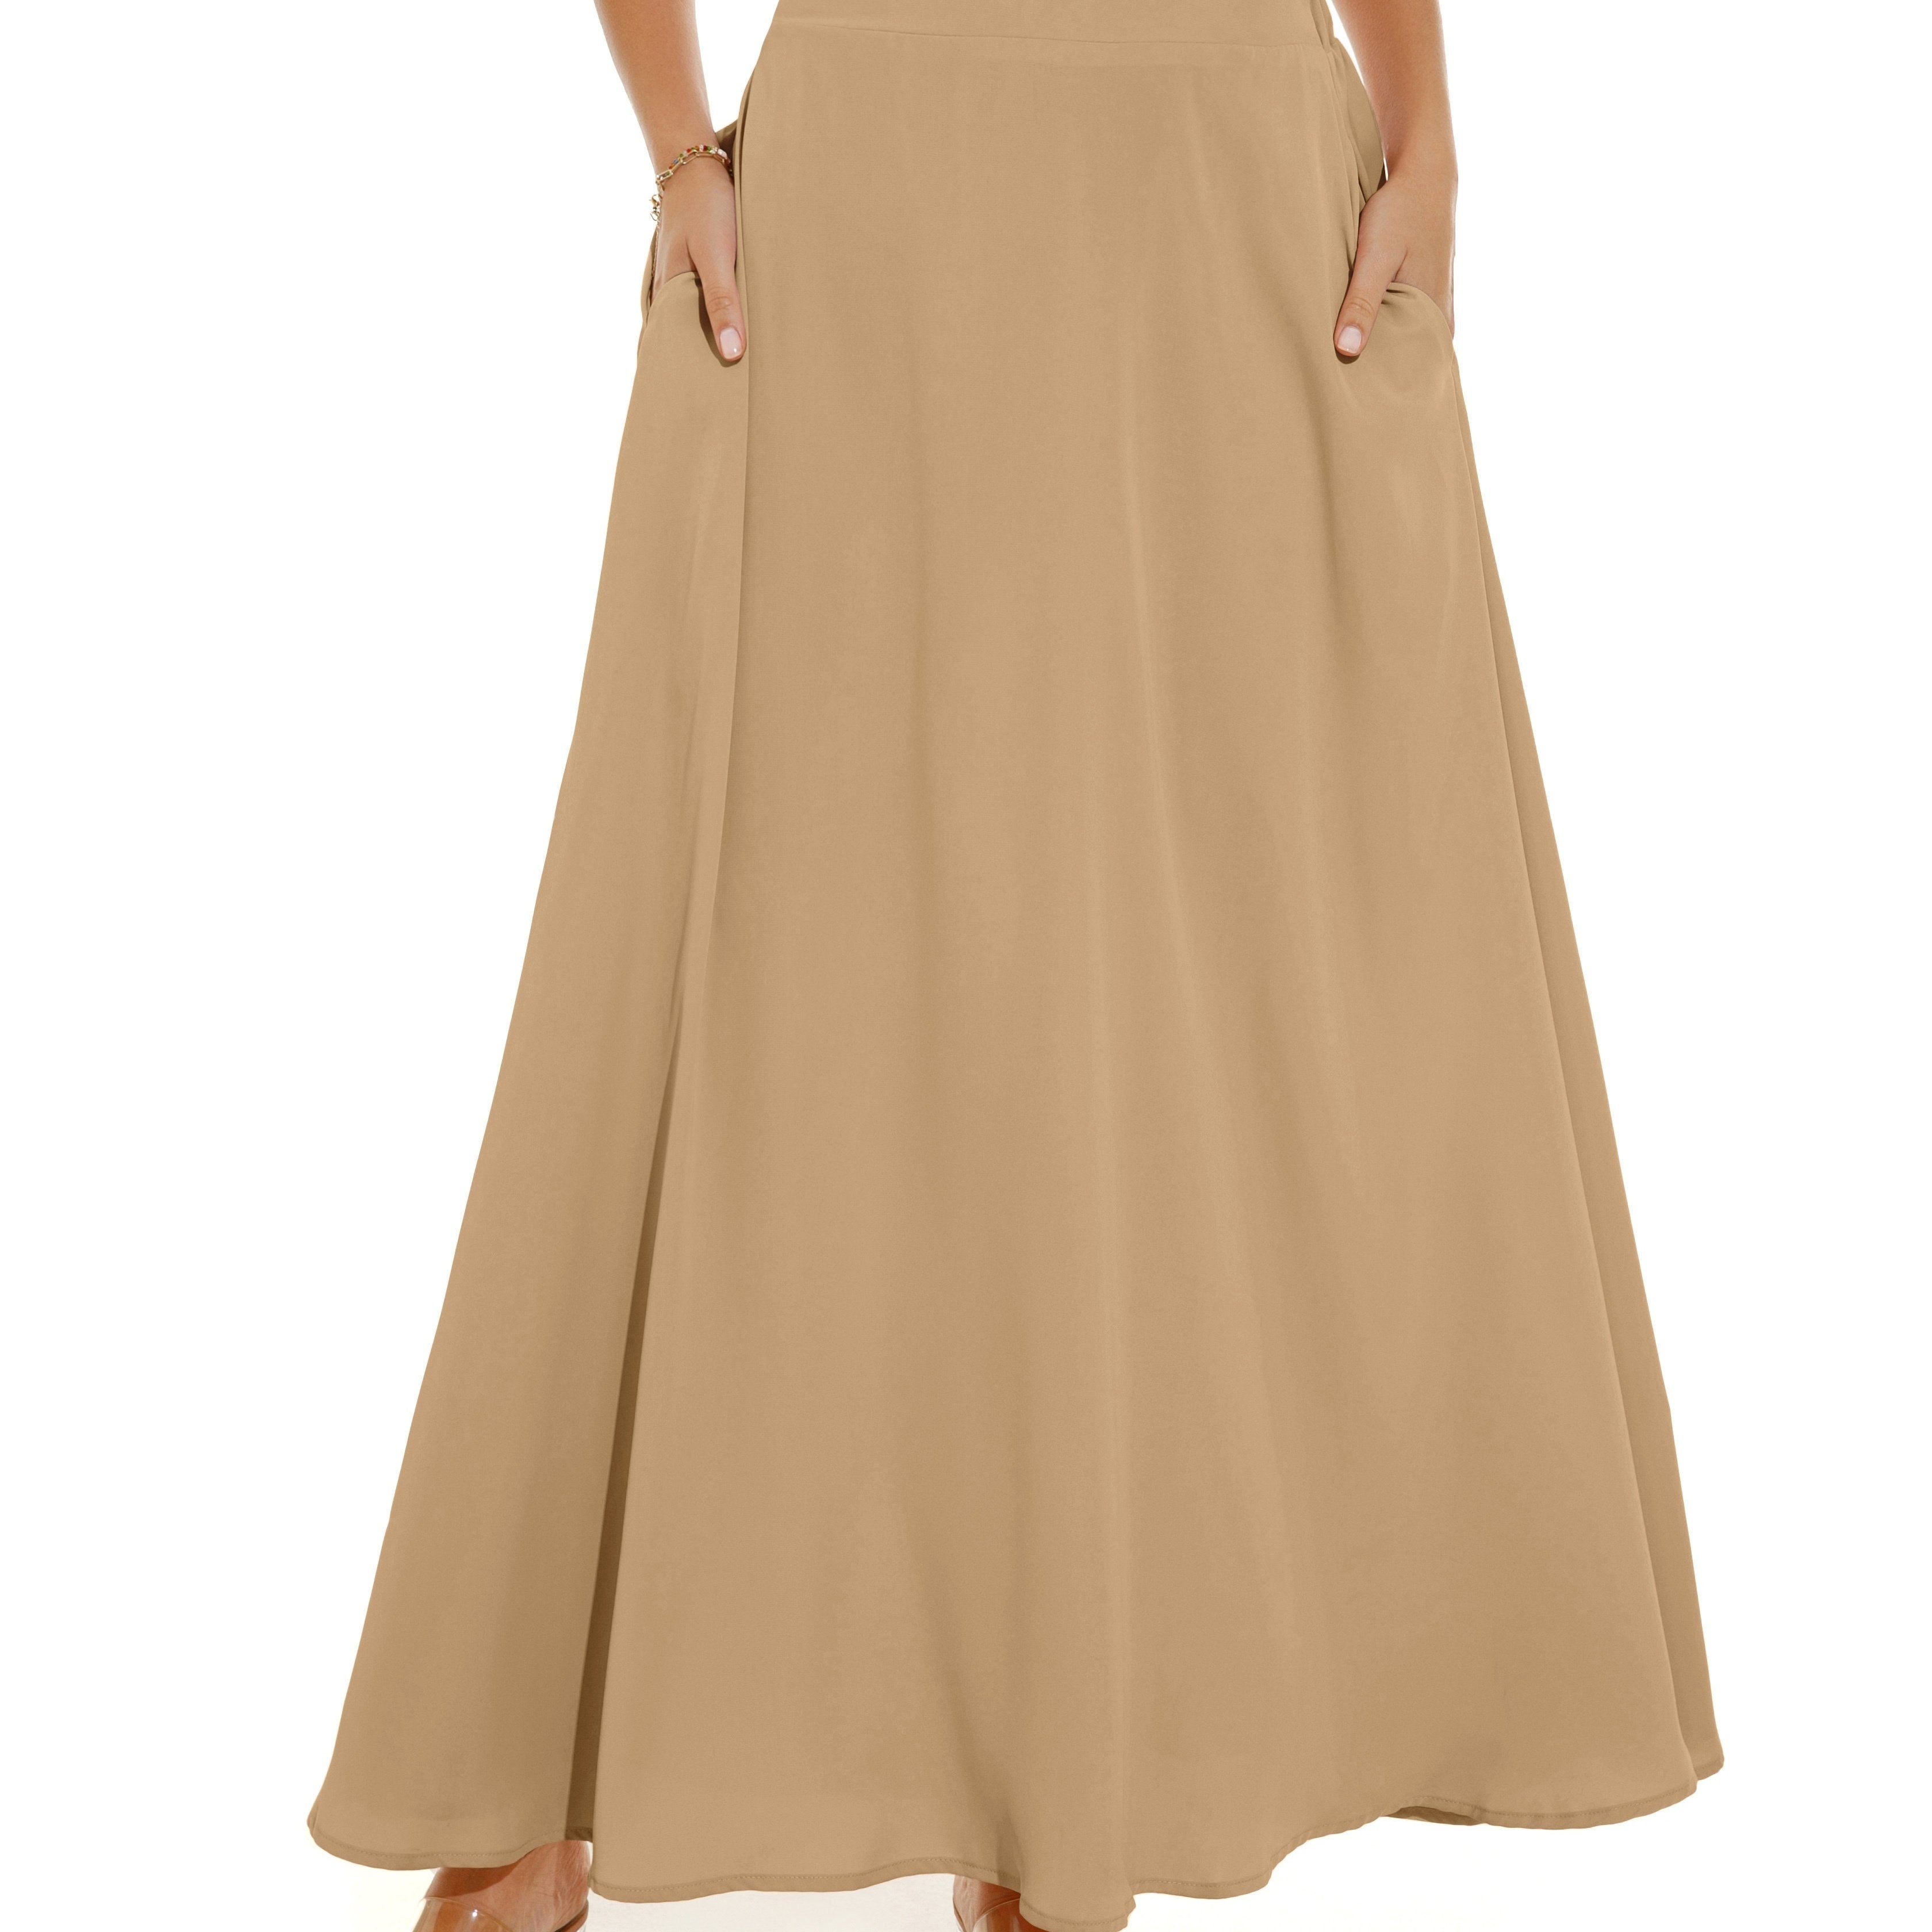 vlovelaw Pleated Long Skirt, Loose Casual Skirt For Spring & Summer, Women's Clothing